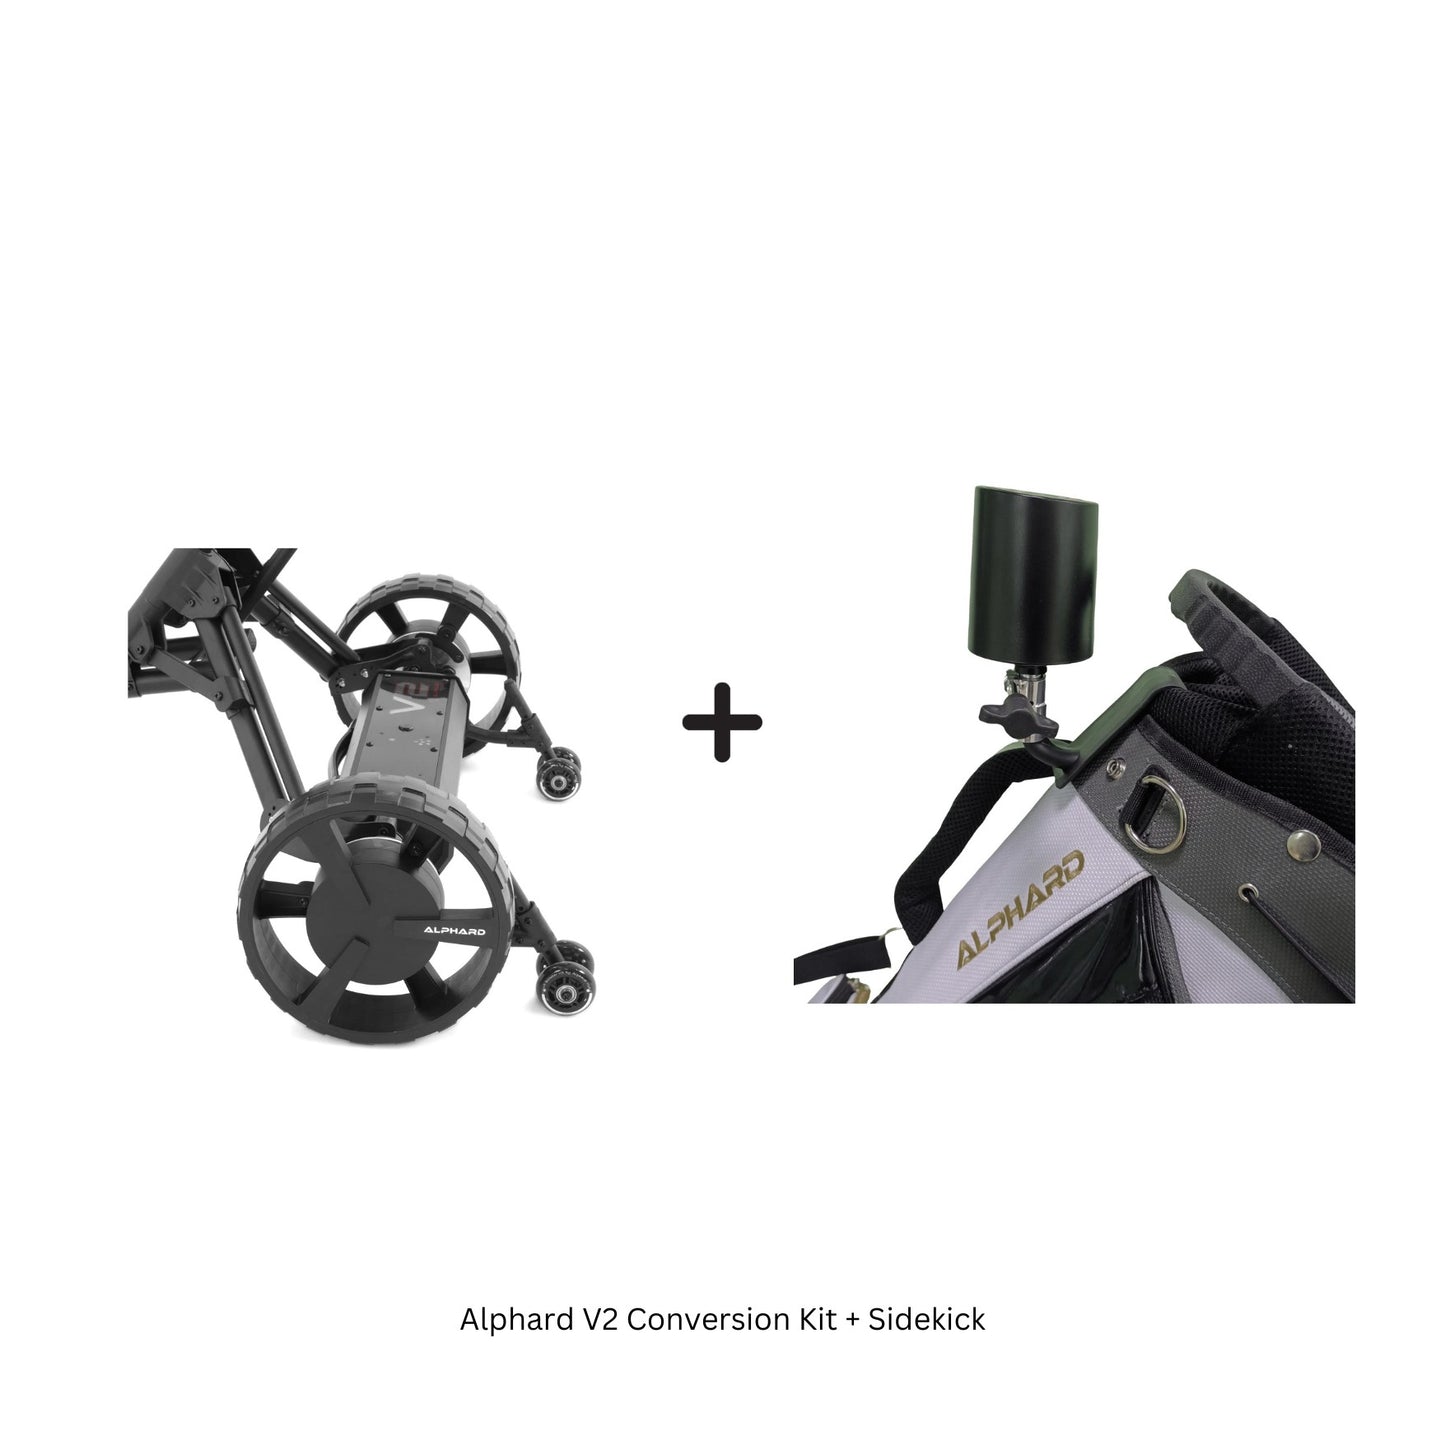 Alphard V2 Conversion Kit + Sidekick